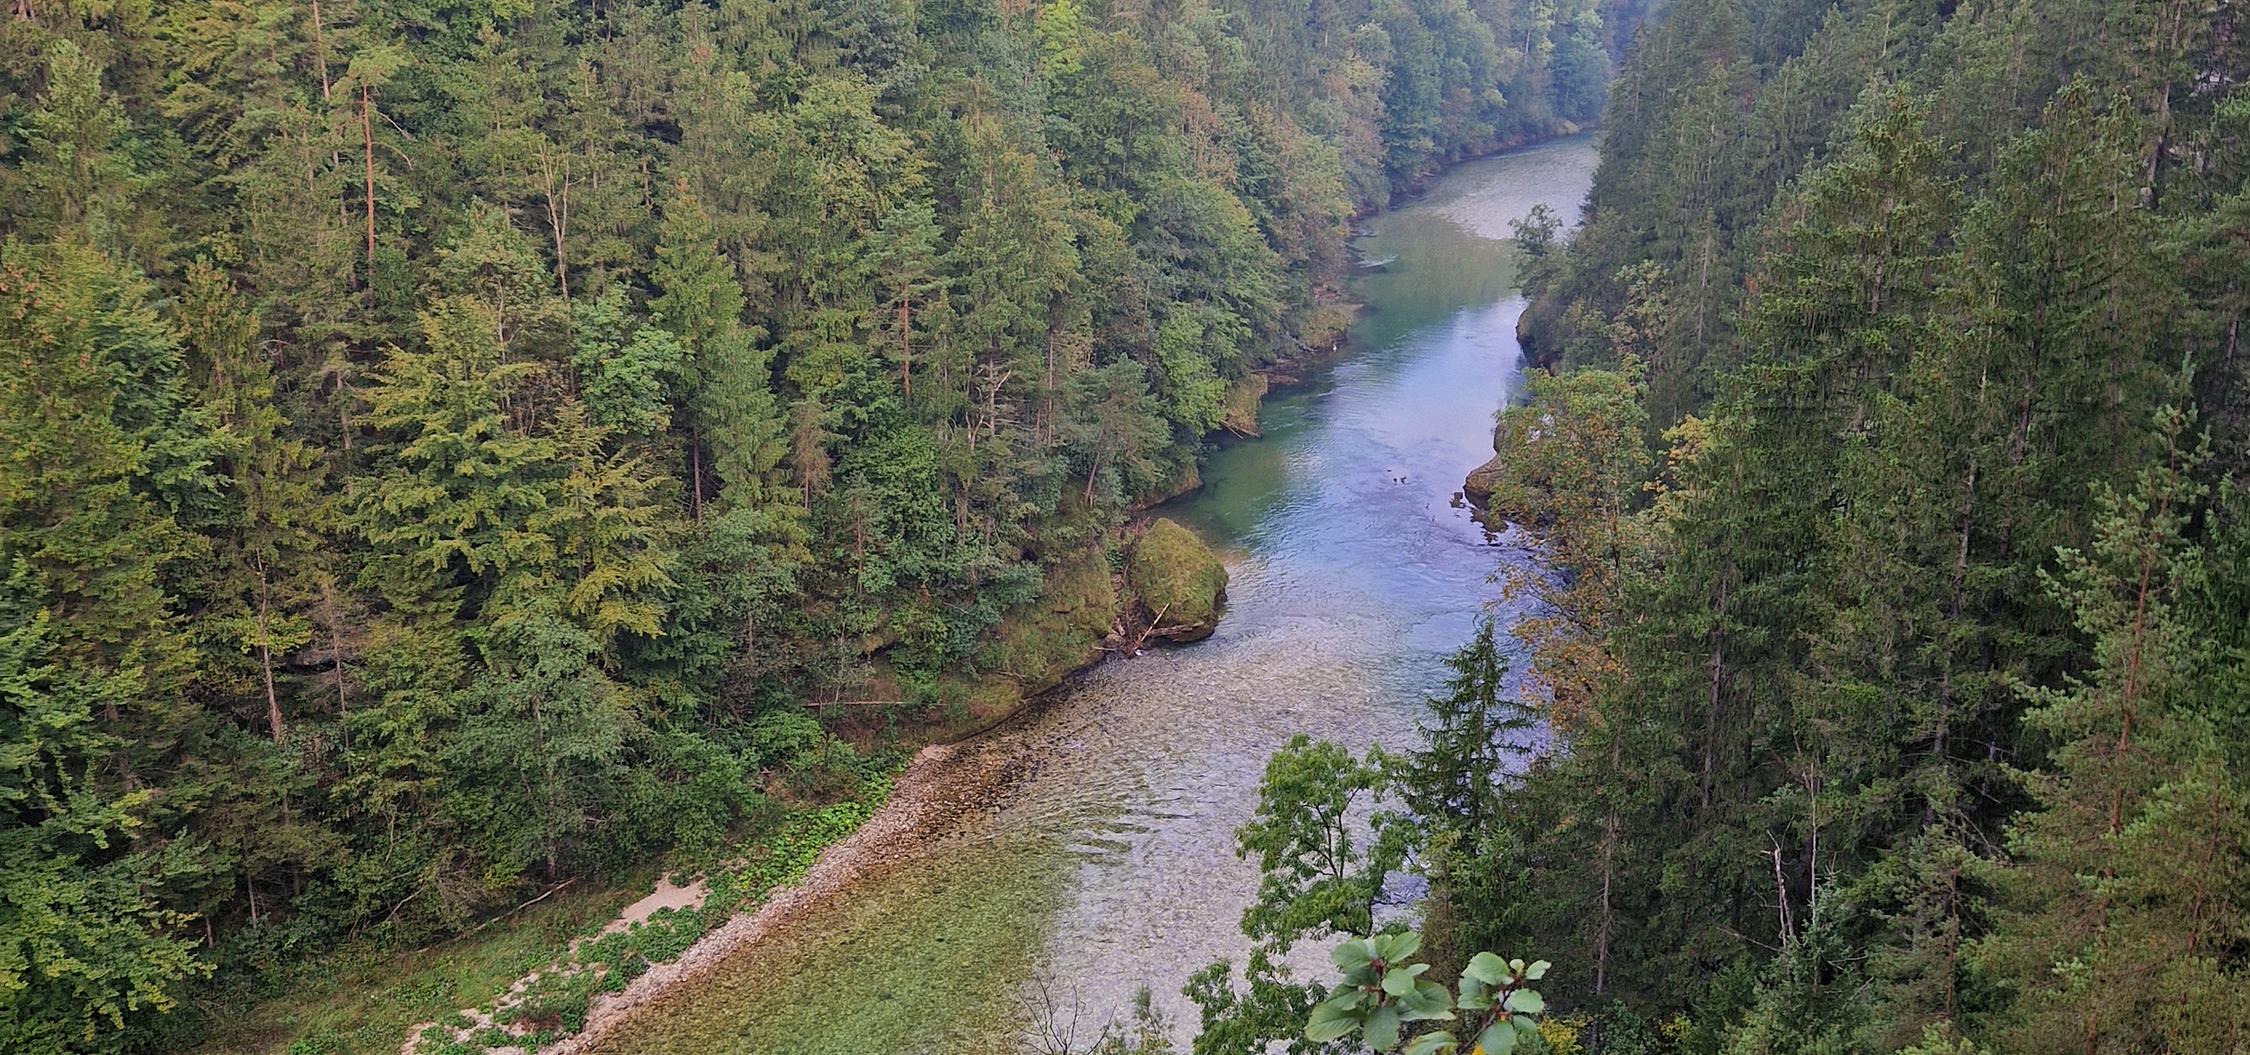 Řeka Steyr protéká lesem lemovanou soutěskou